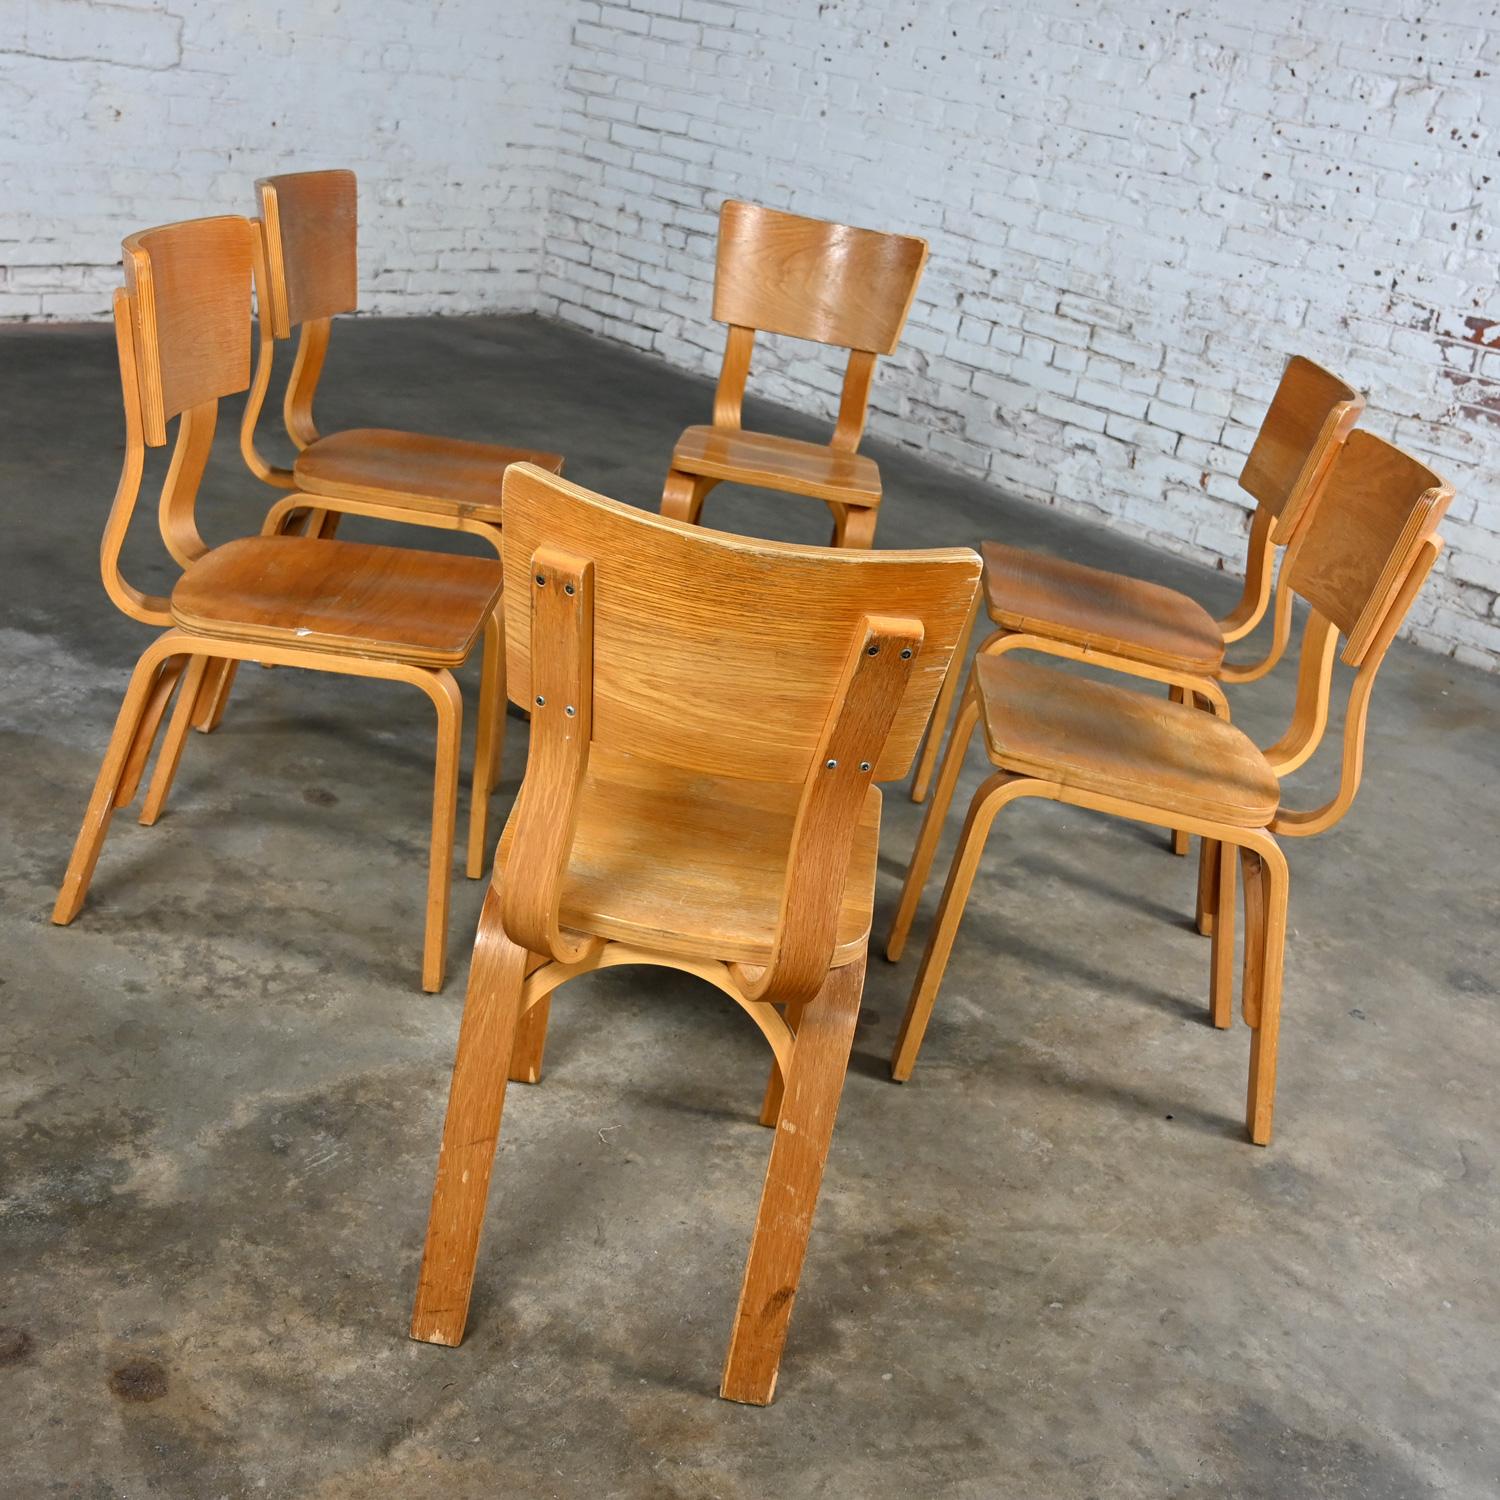 Merveilleuses chaises de salle à manger Thonet #1216-S17-B1 en contreplaqué de chêne courbé avec des sièges en forme de selle et un seul dossier en arc, ensemble de 6, en l'état. Byit, en gardant à l'esprit qu'il s'agit d'une pièce vintage et non